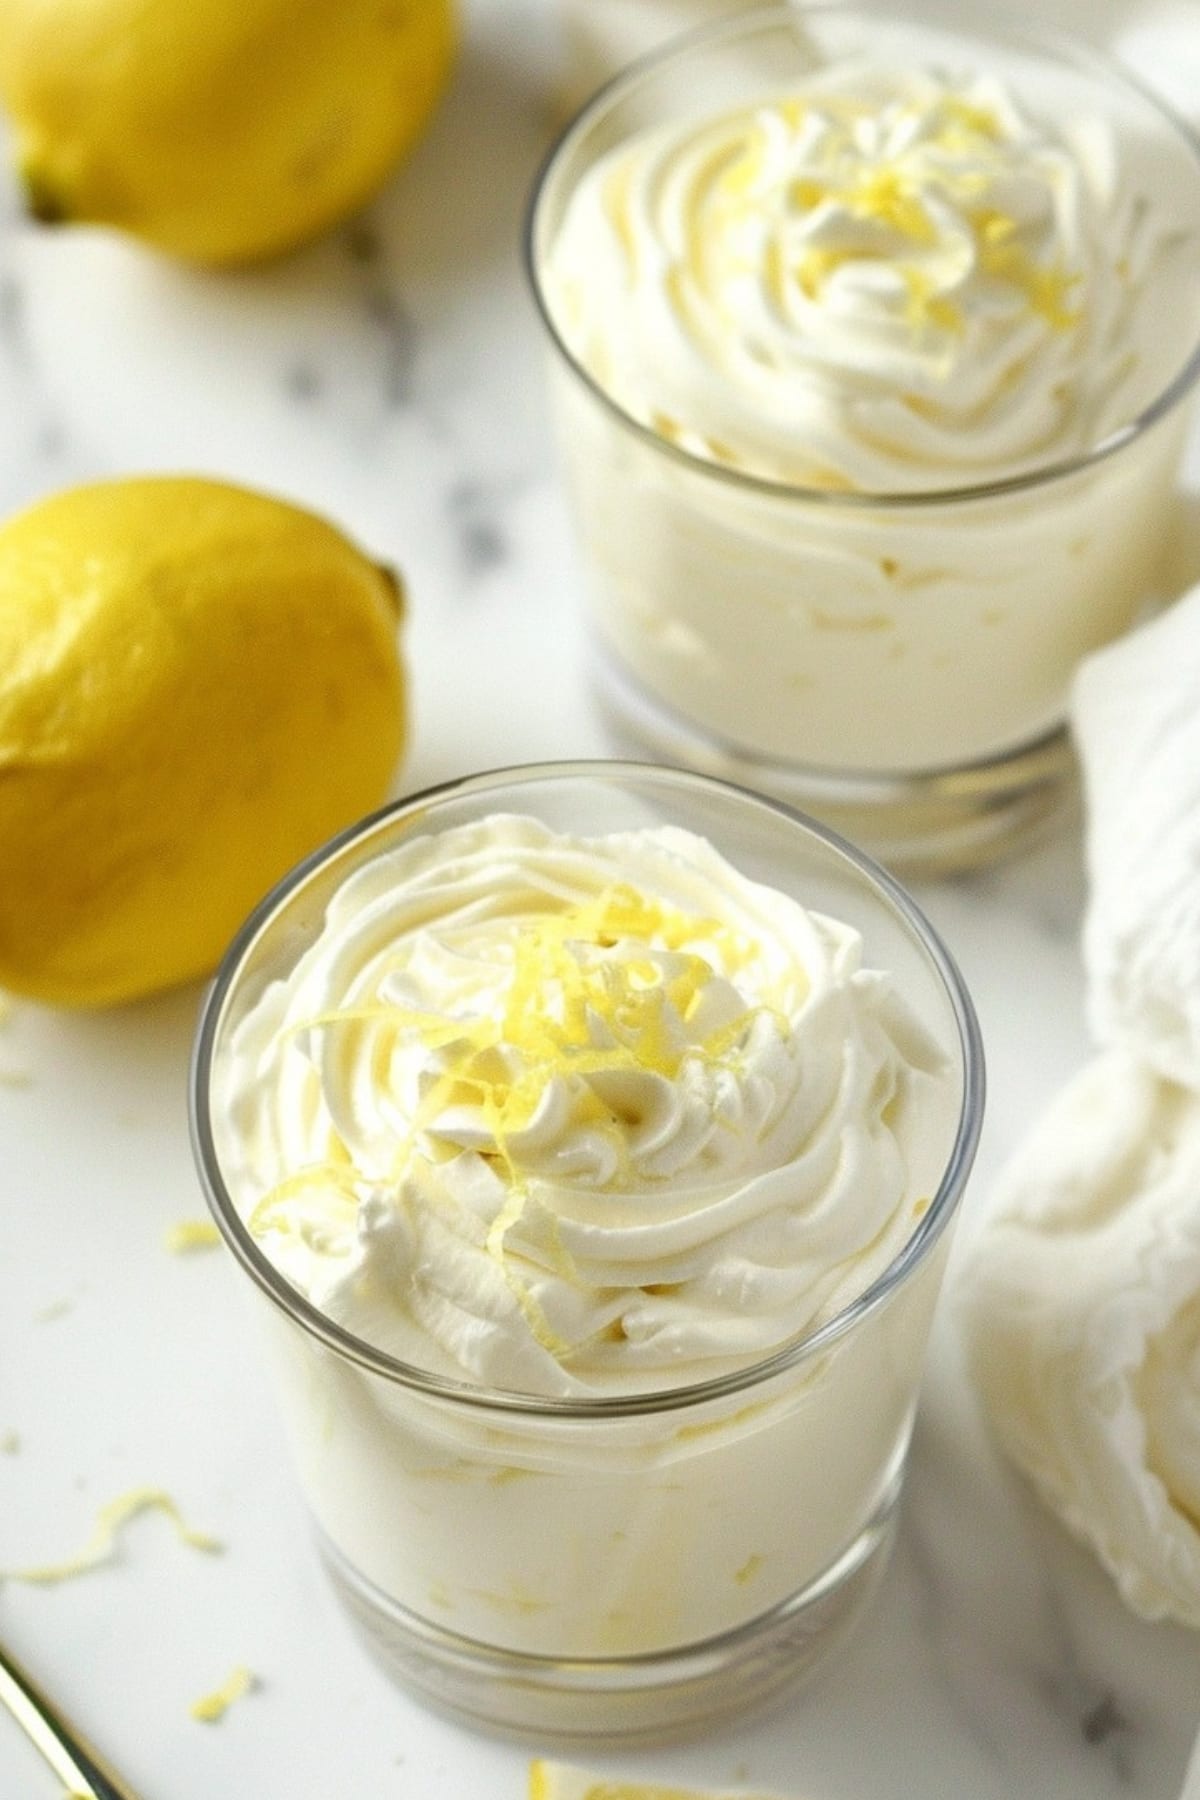 Lemon mousse on serving glasses garnished with lemon zest.